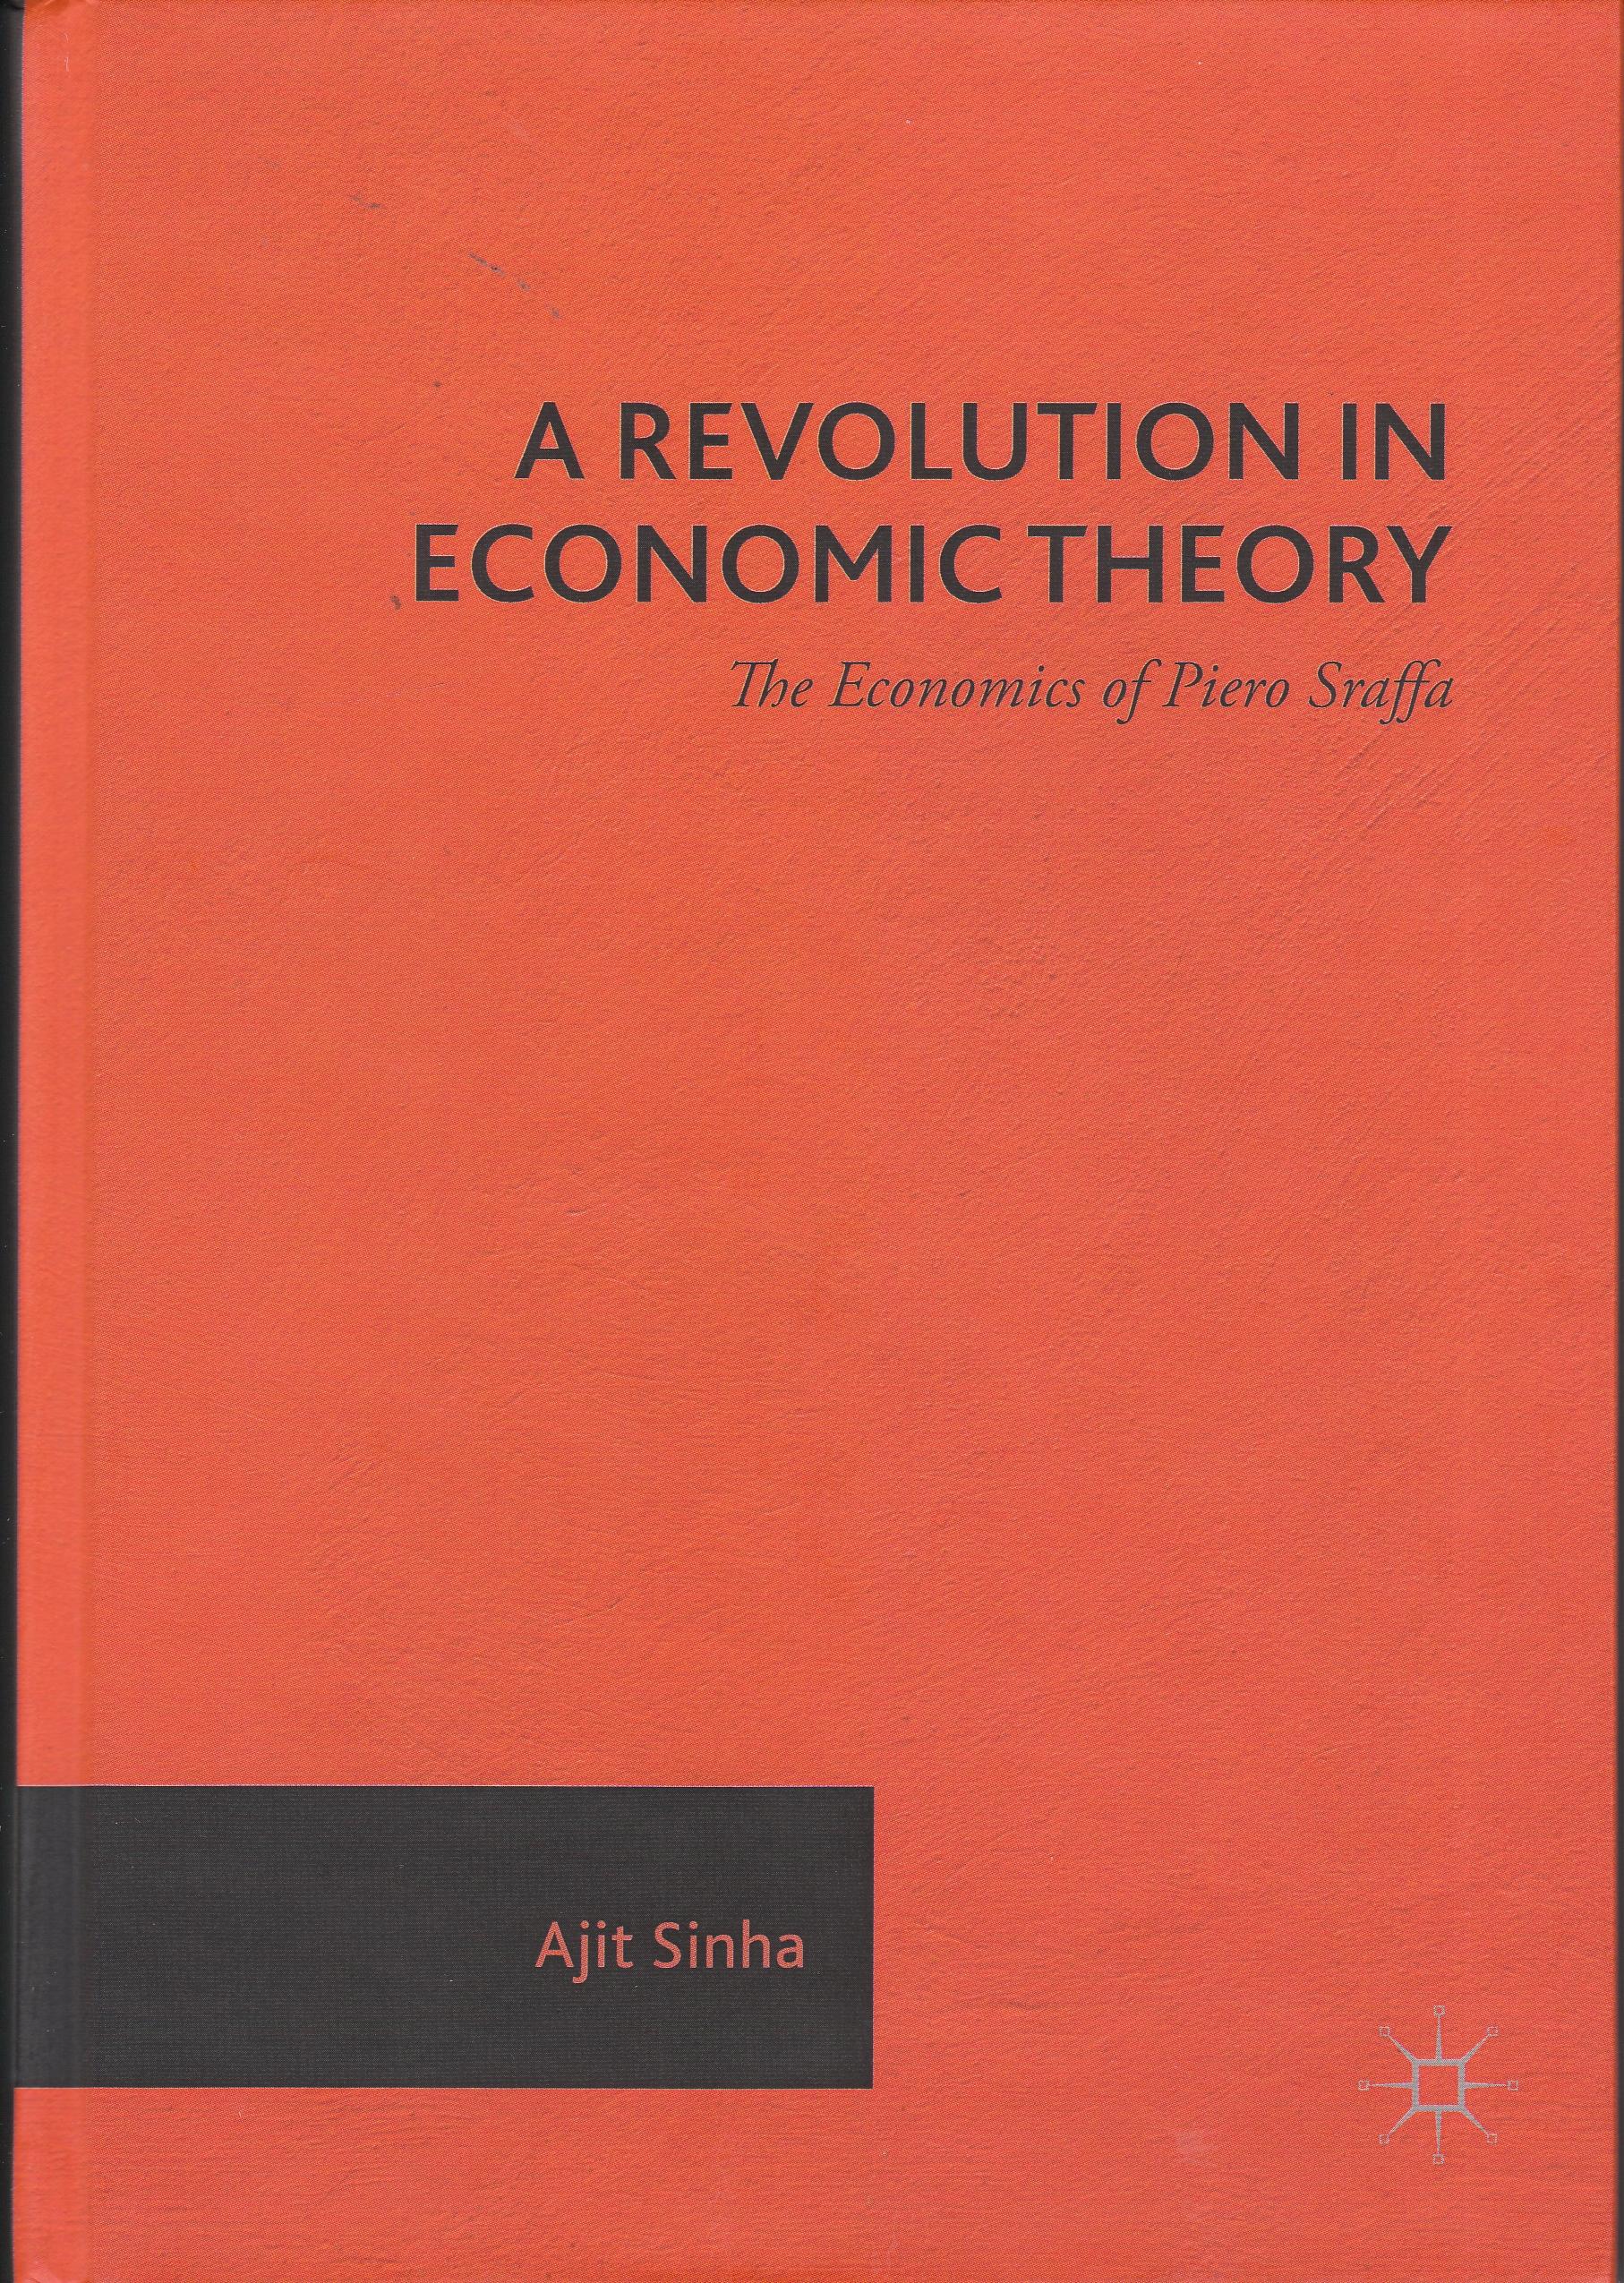 A Revolution in Economic Theory  "The Economics of Piero Sraffa"